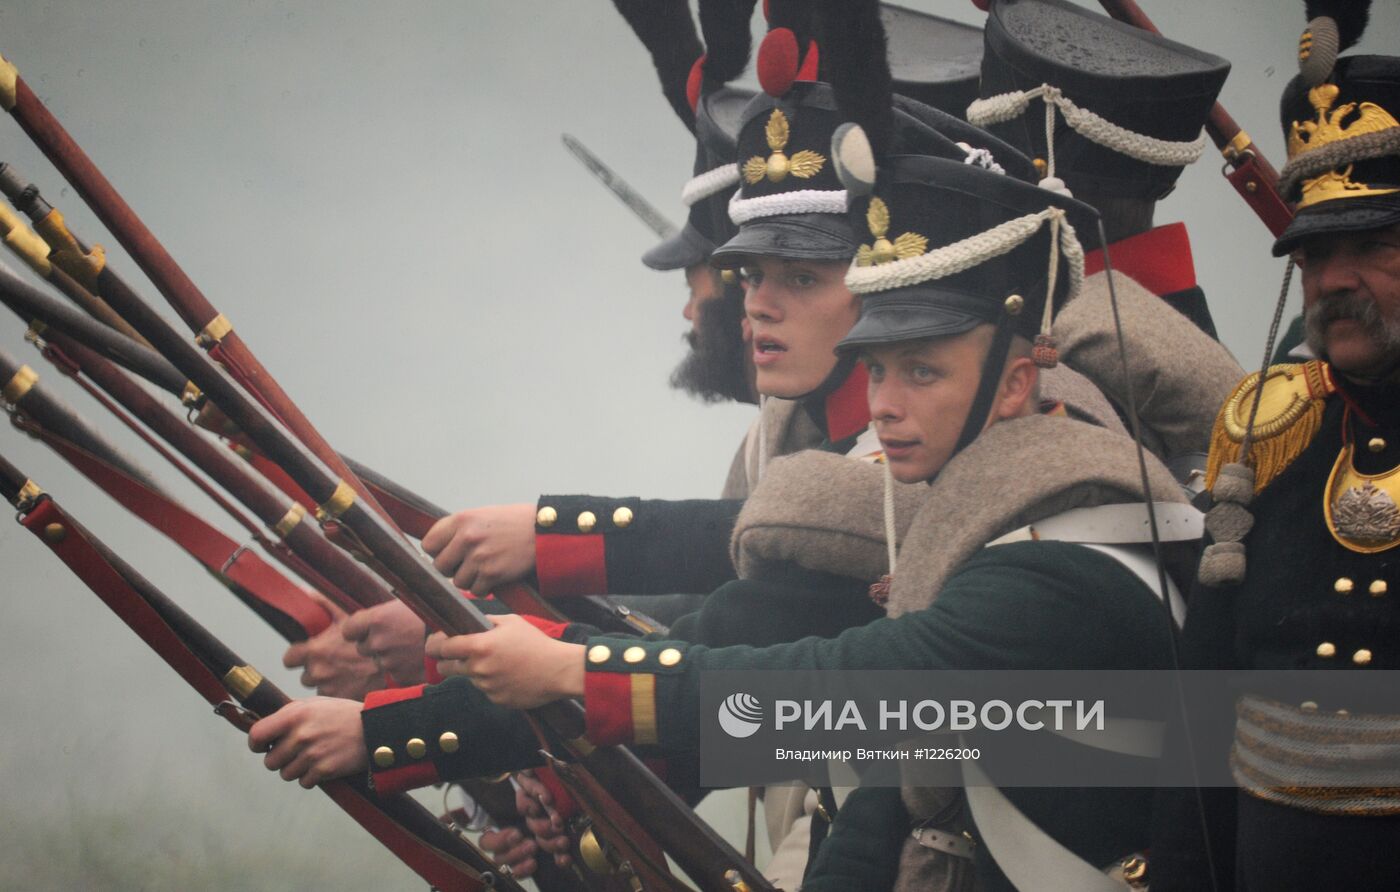 Военно-исторический праздник "День Бородина"